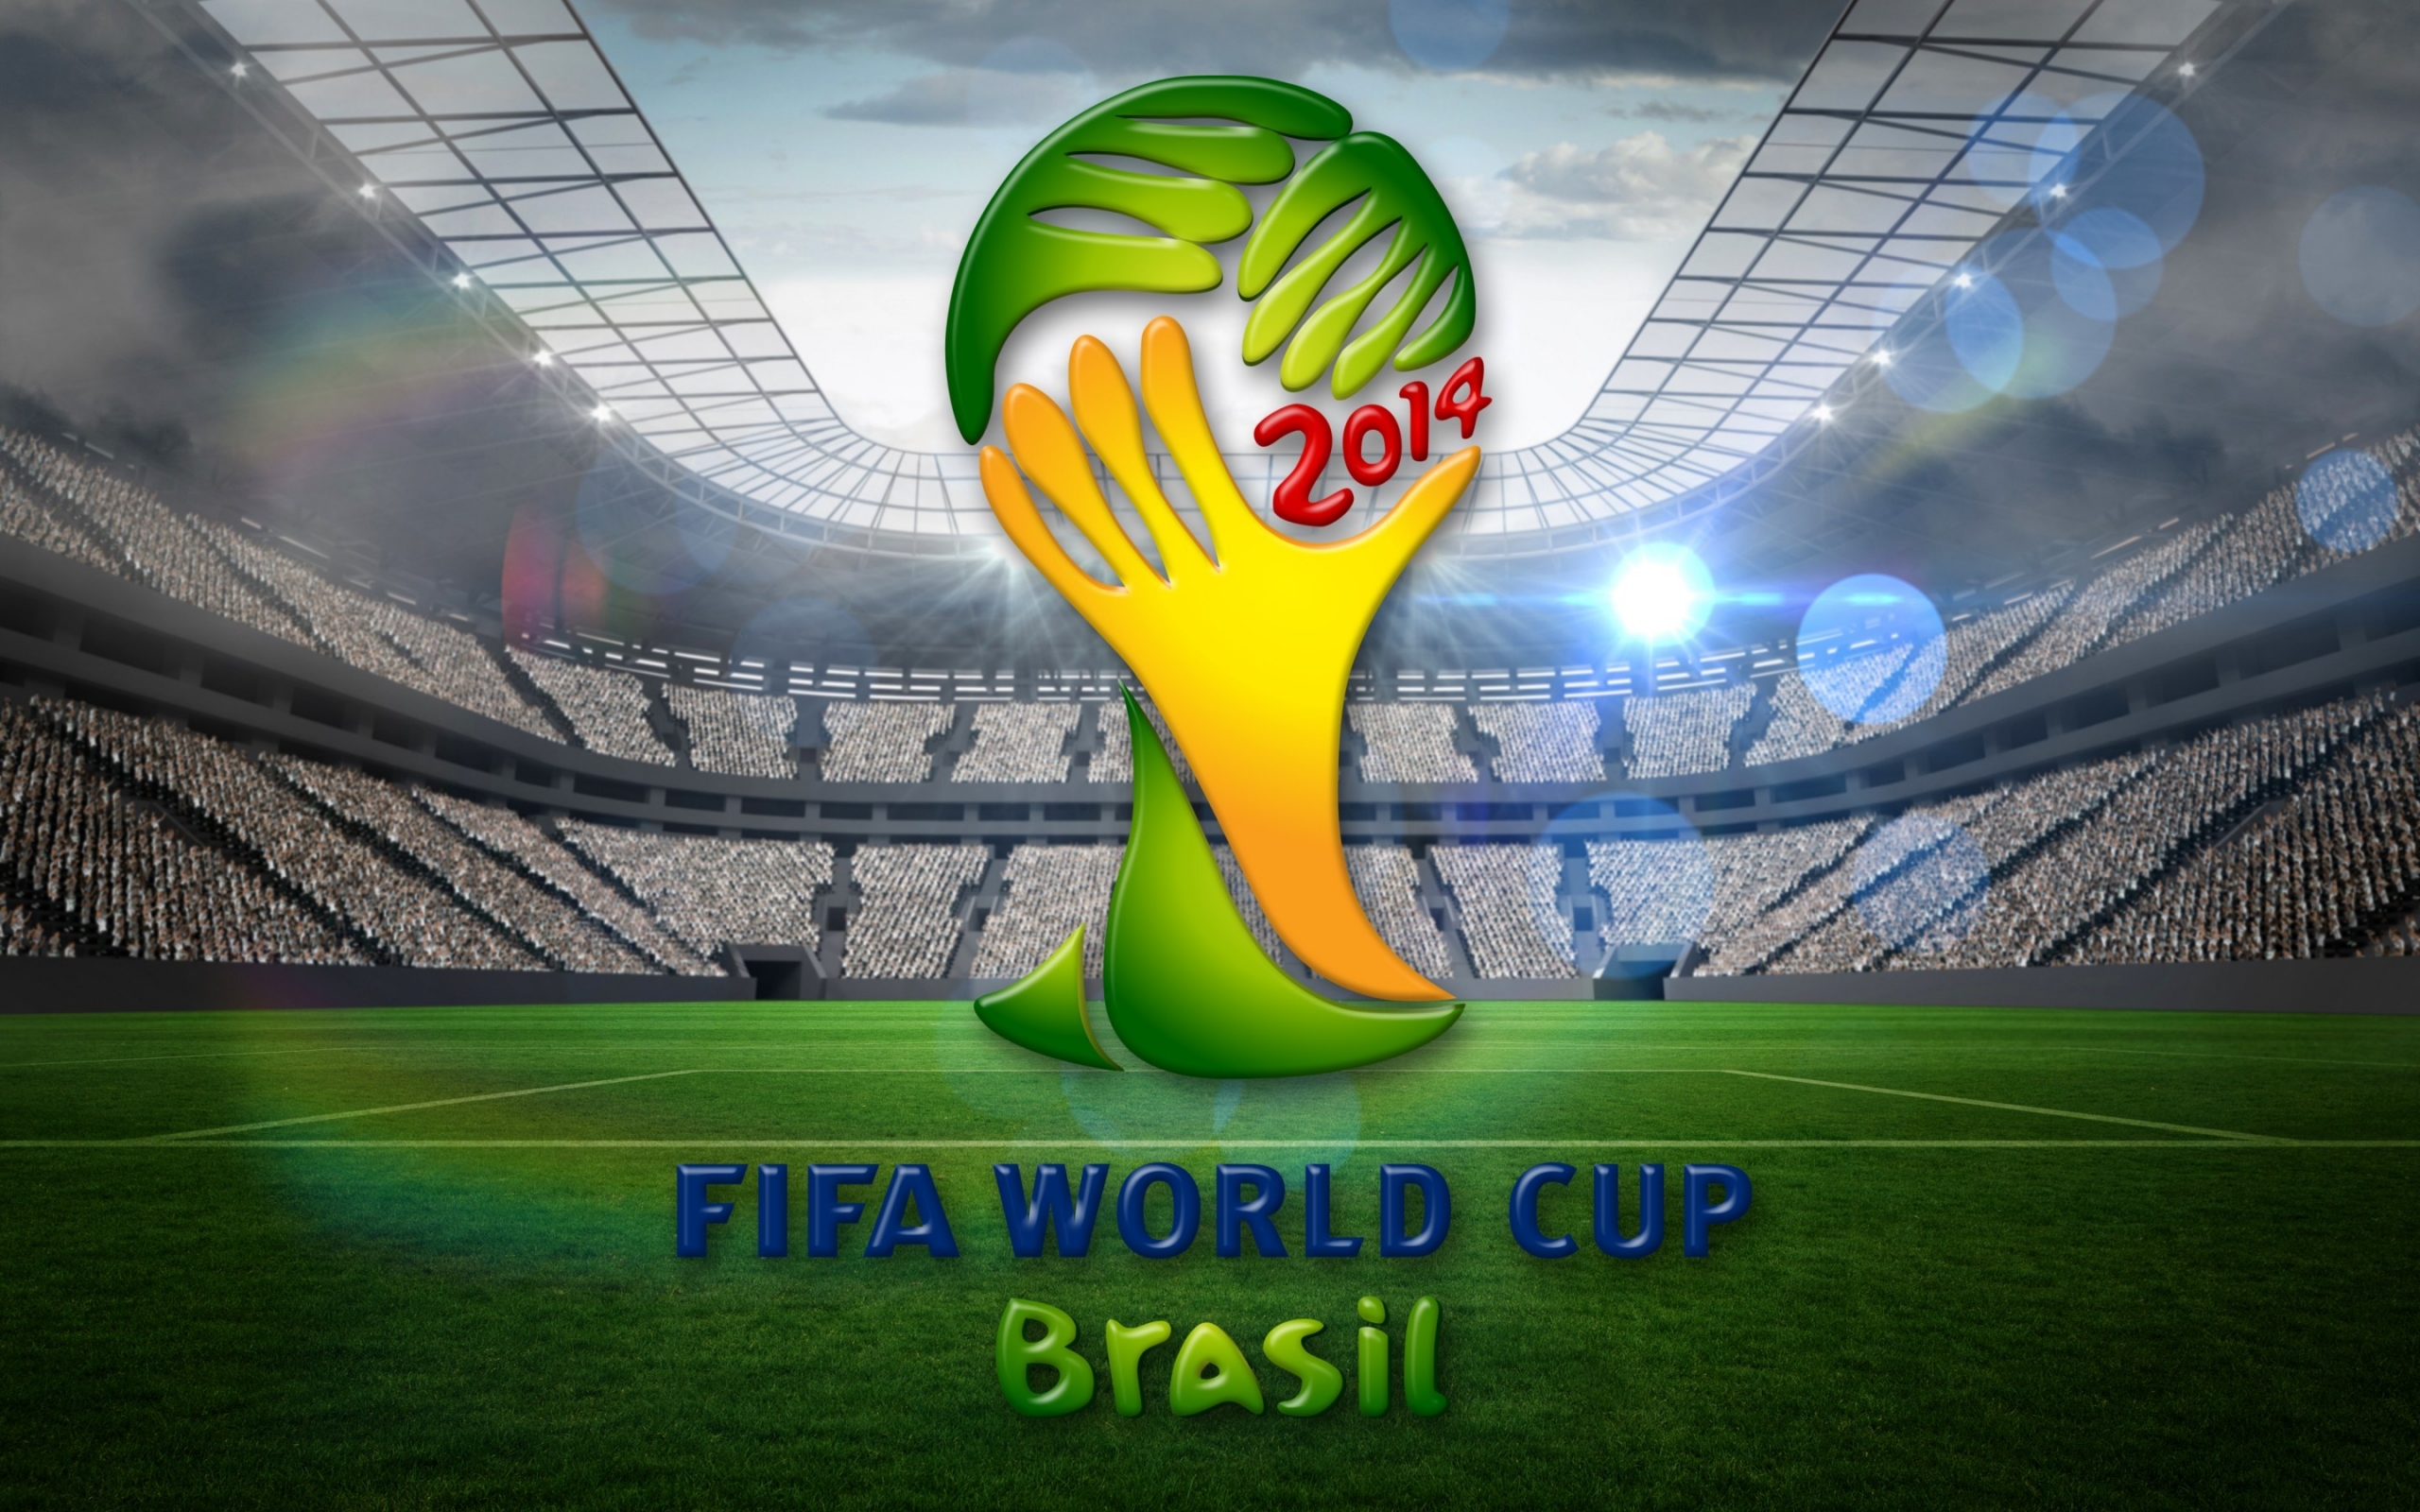 2014 Brasil World Cup 2560 x 1600 widescreen Wallpaper